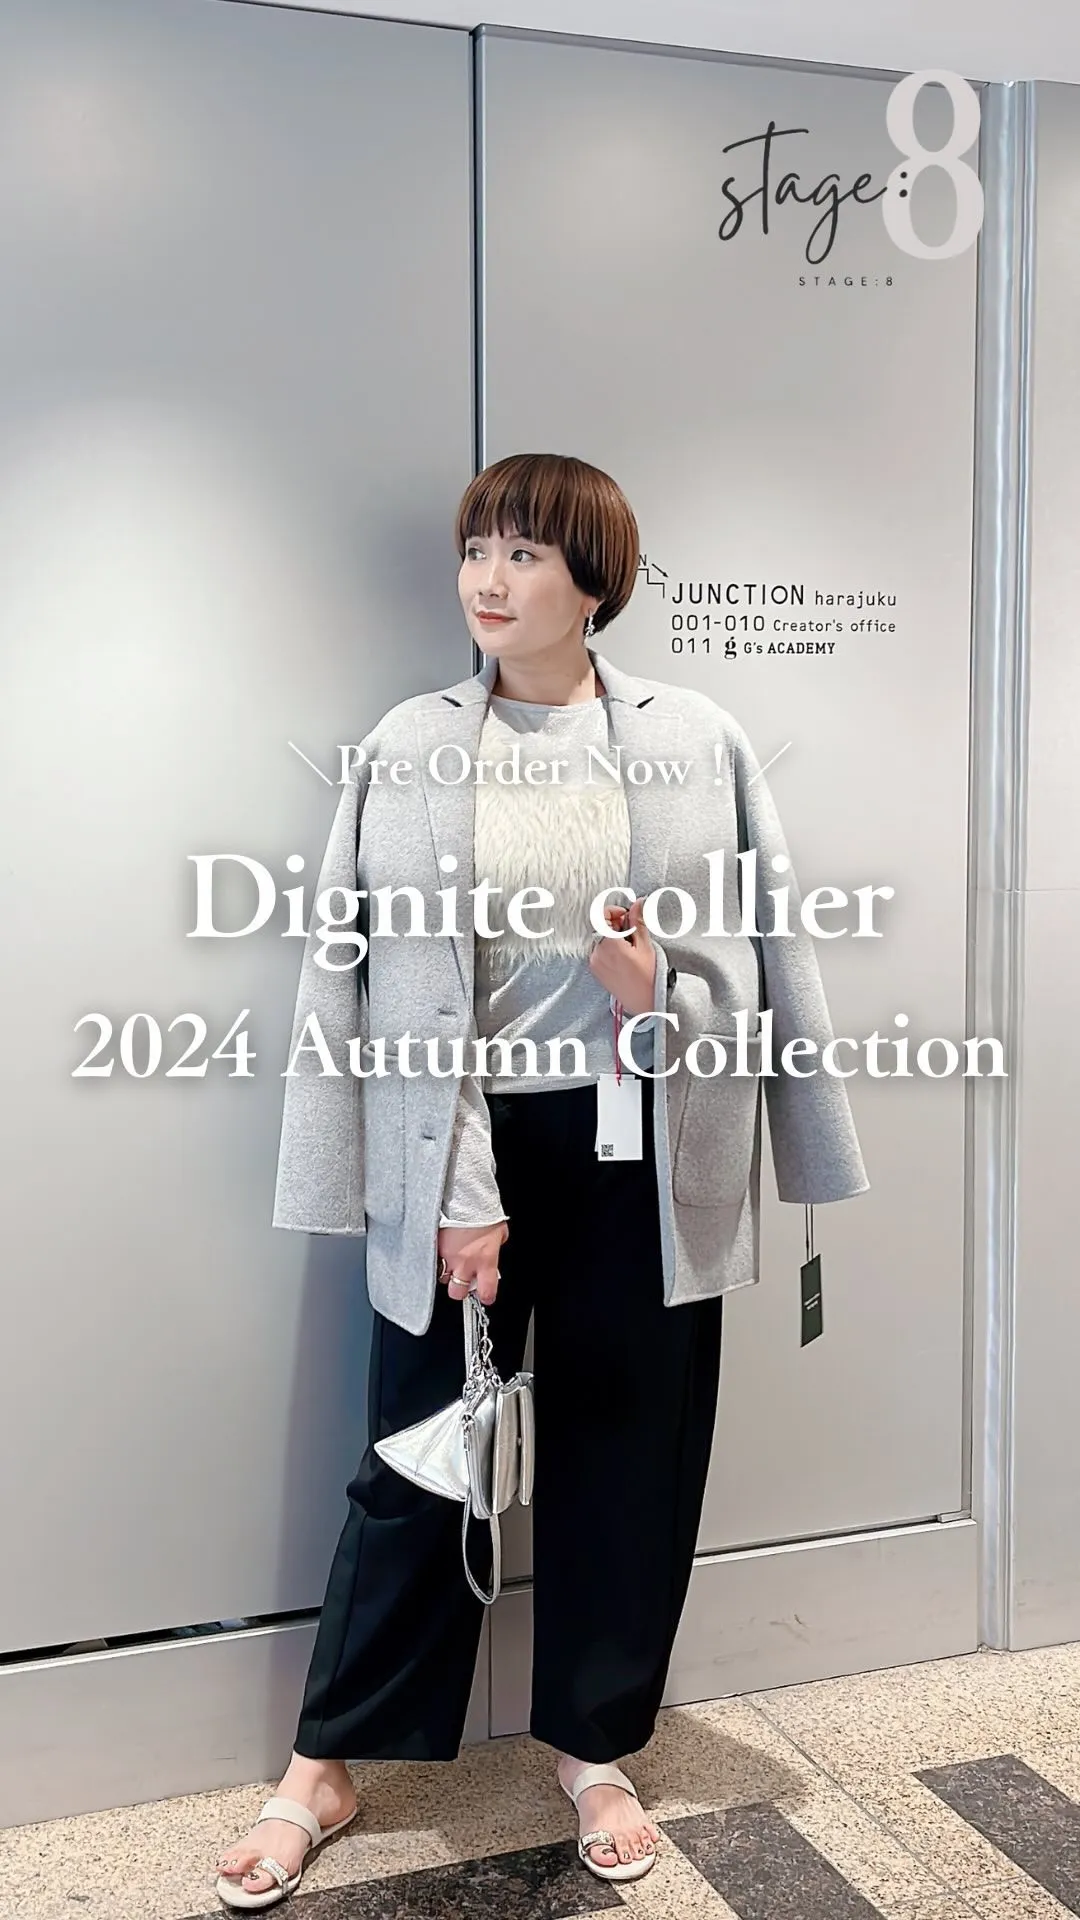 Dignite collier 2024 Autumn Co...